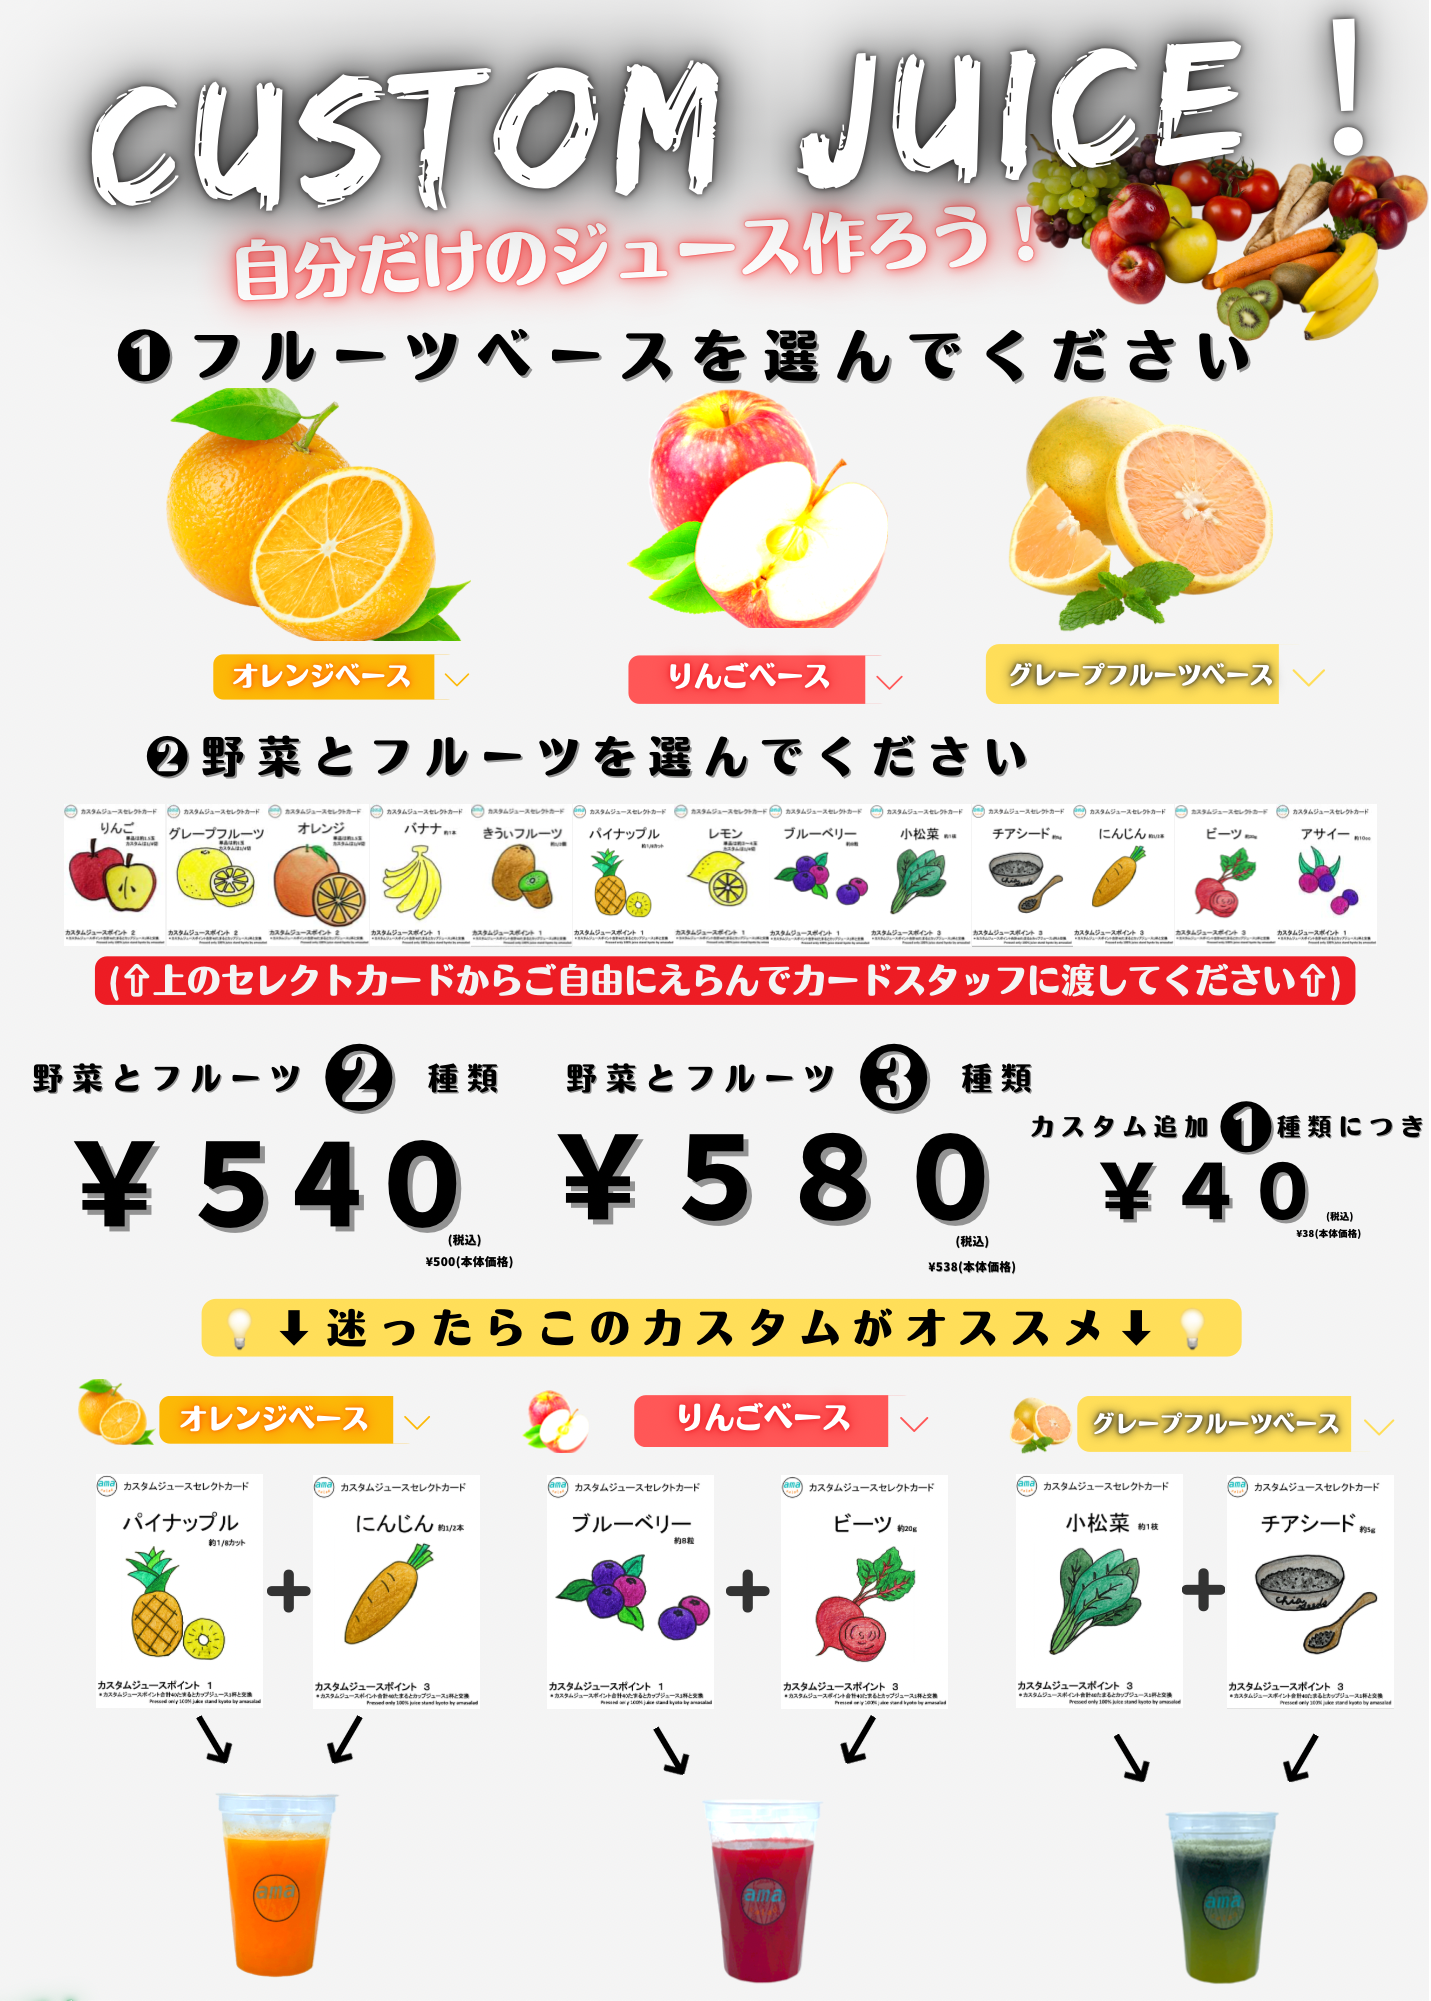 組み合わせは210通り以上！大丸京都店内「amaサラダ」から
新商品『カスタムジュース』が7月1日(金)販売開始